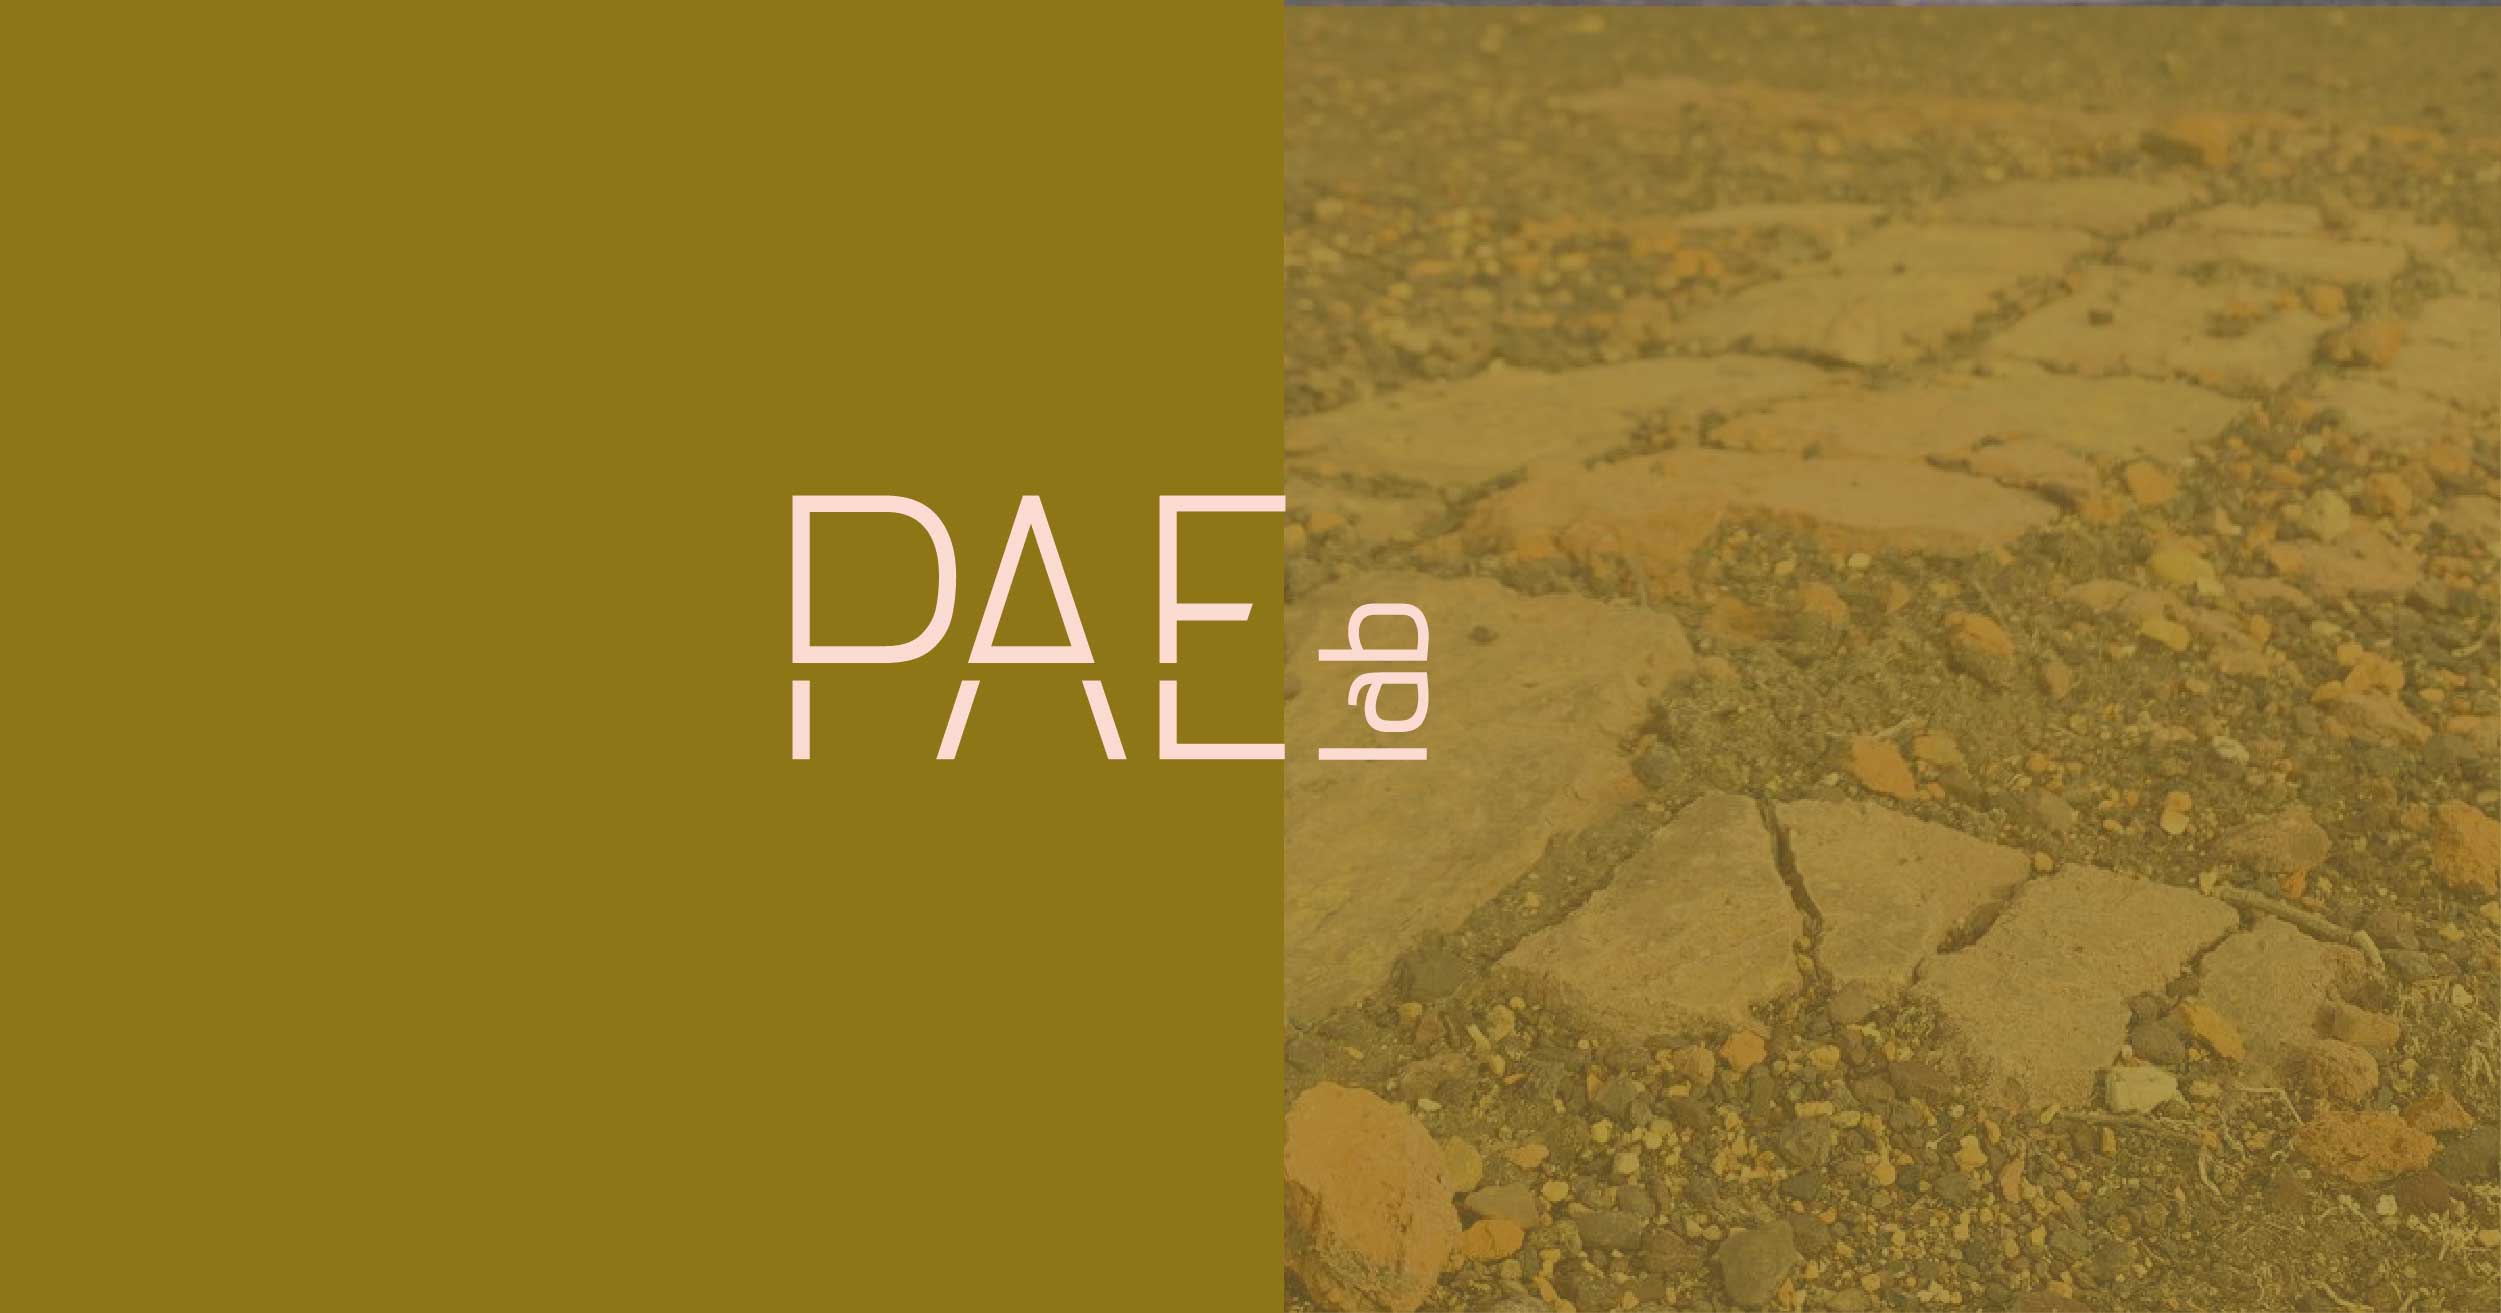 Proyecto PAE lab  | El alambre